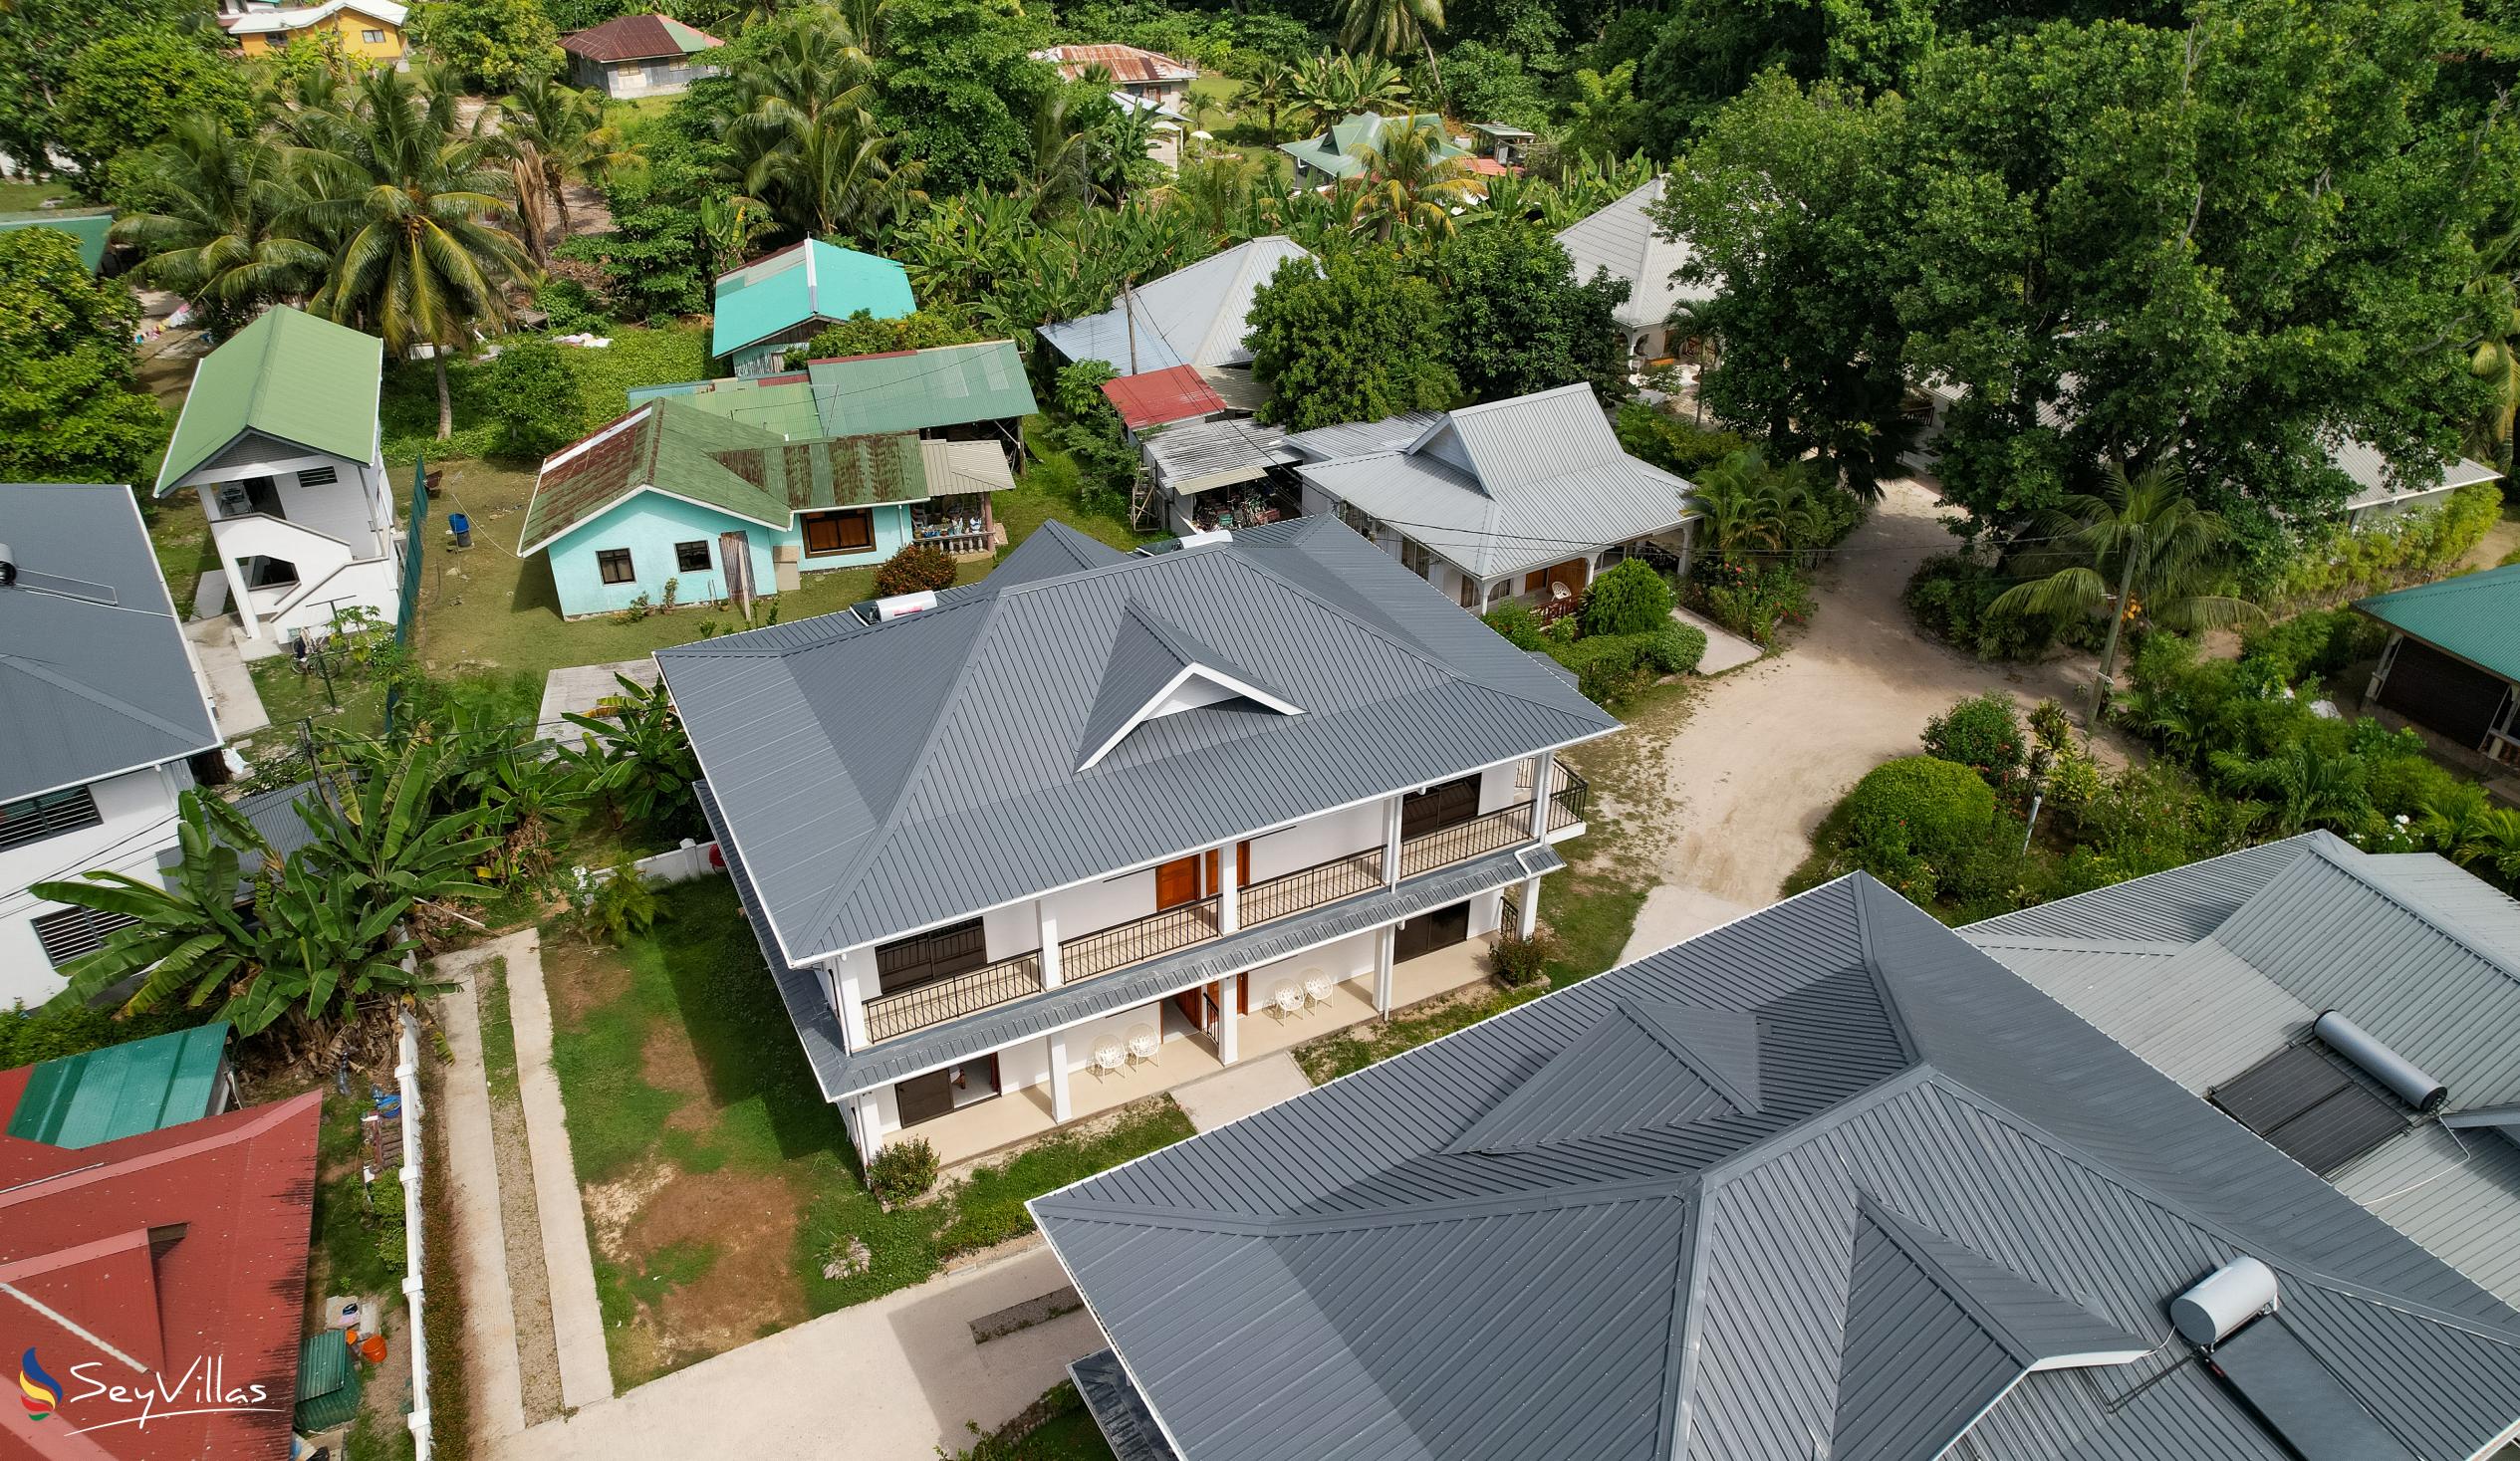 Foto 20: Villa Veuve - Aussenbereich - La Digue (Seychellen)